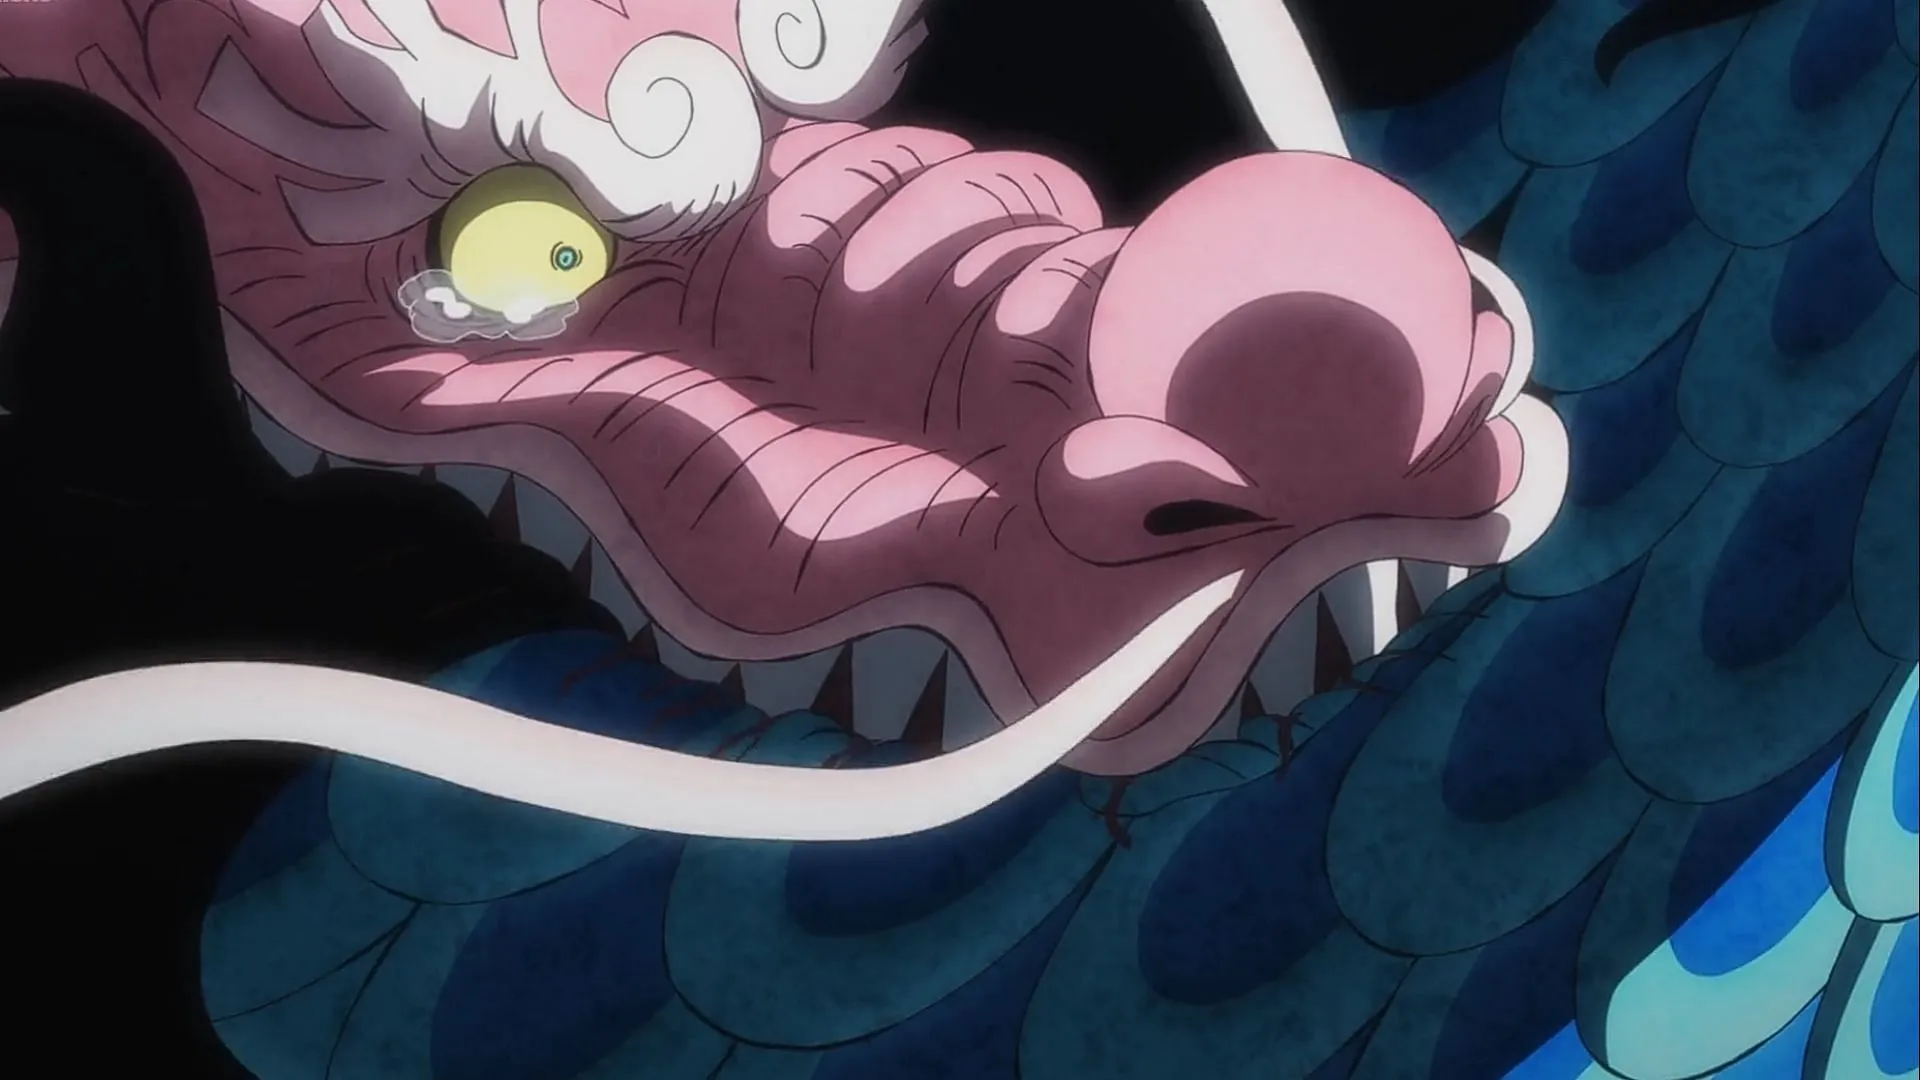 Momonosuke morde Kaido no episódio 1050 de One Piece (Imagem via Toei Animation)